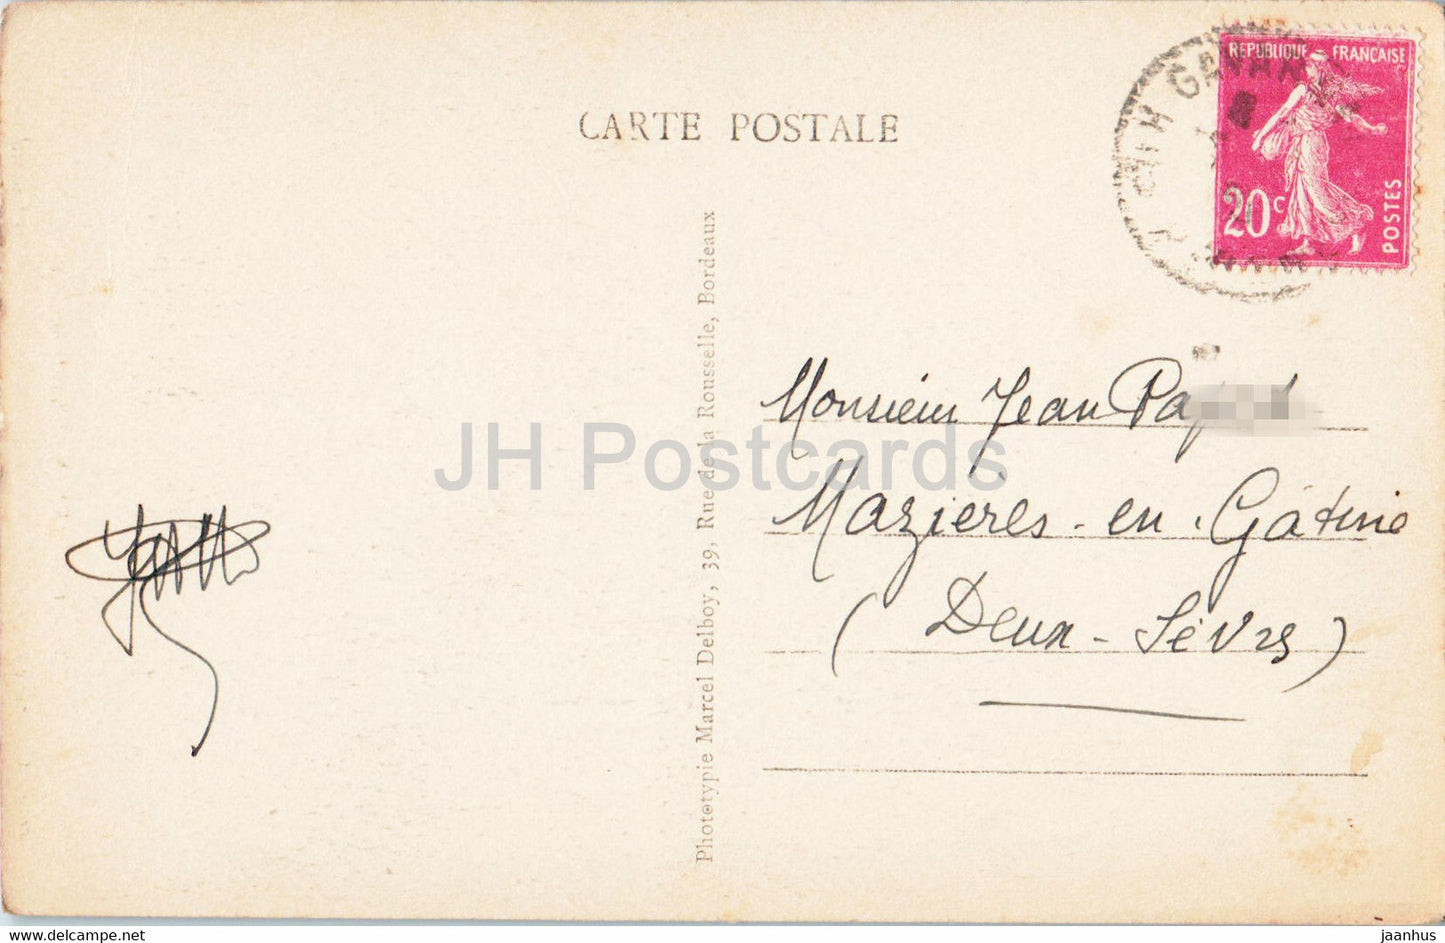 Gavarnie - La Grande Cascade du Cirque - Les Petites Cascades - 19 - alte Postkarte - Frankreich - gebraucht